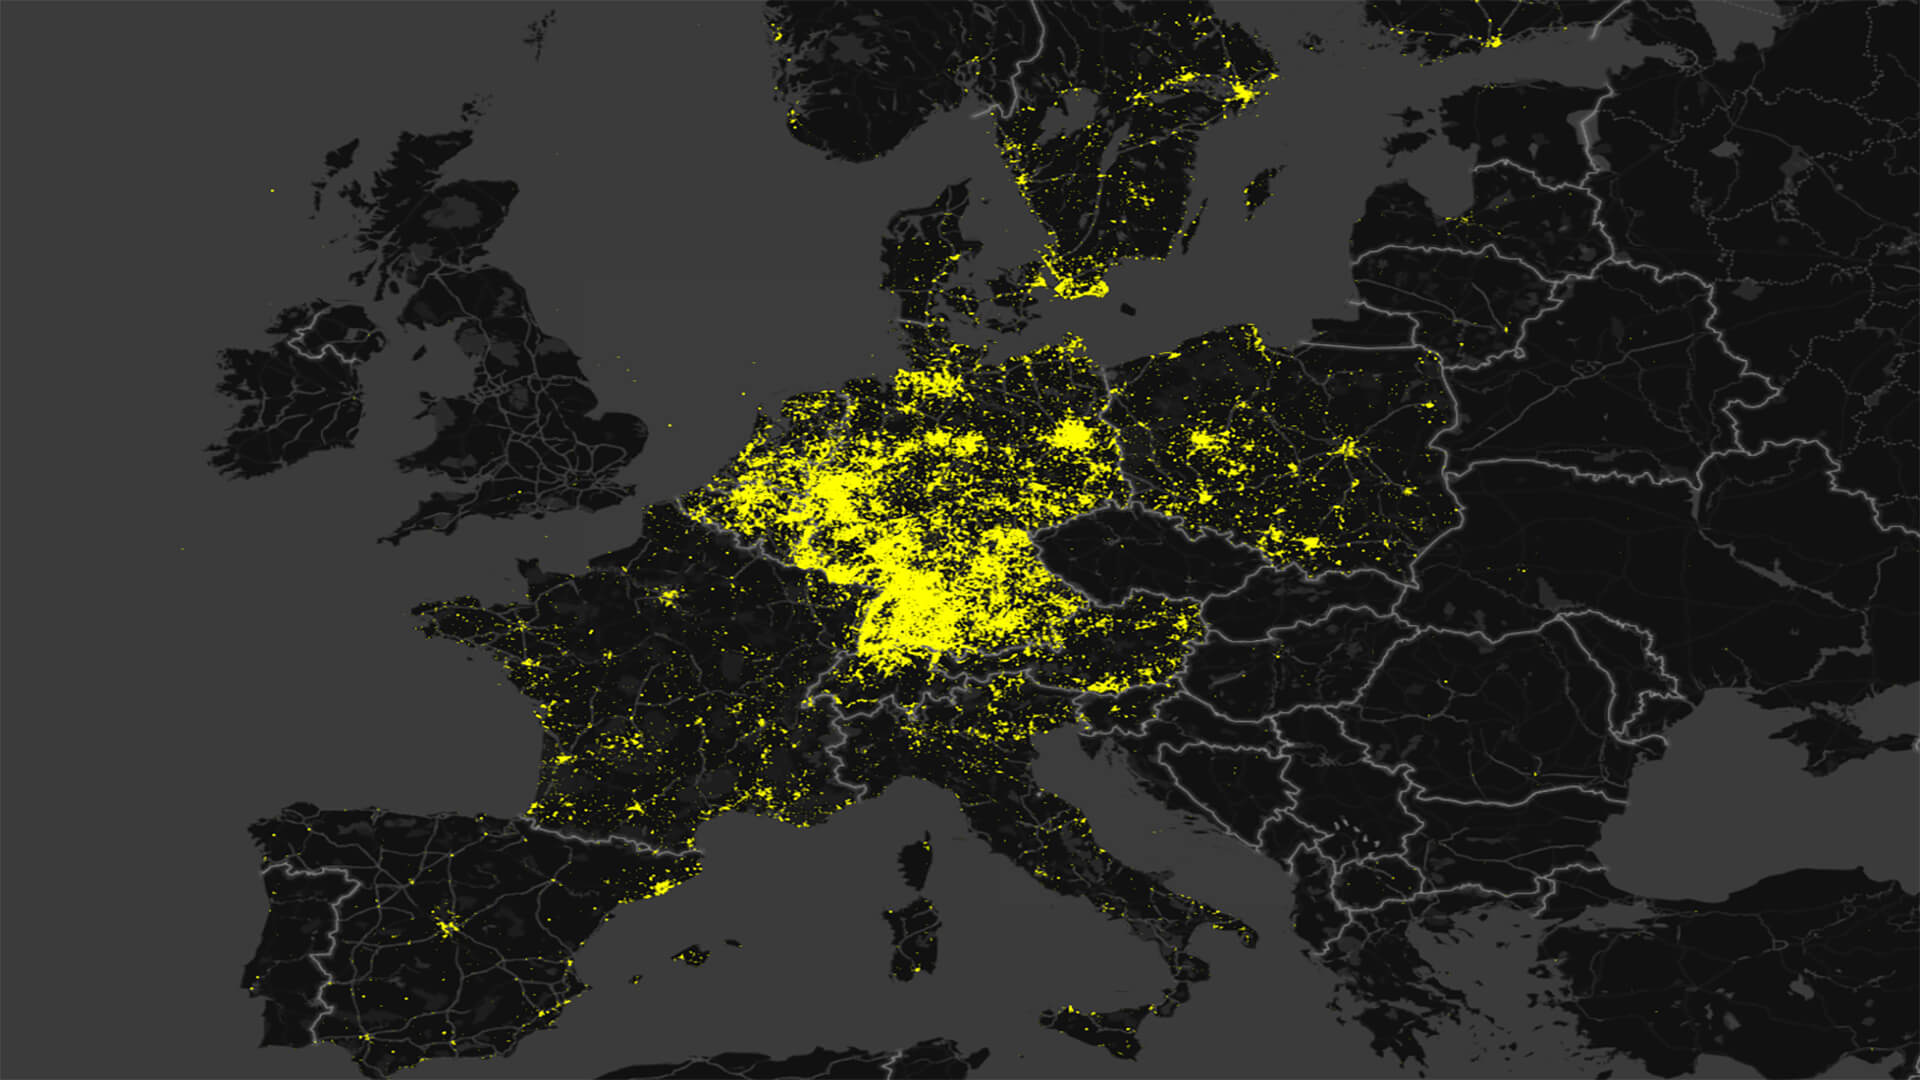 Europakarte die die Häufung an Solaranlagen Planung zeigt